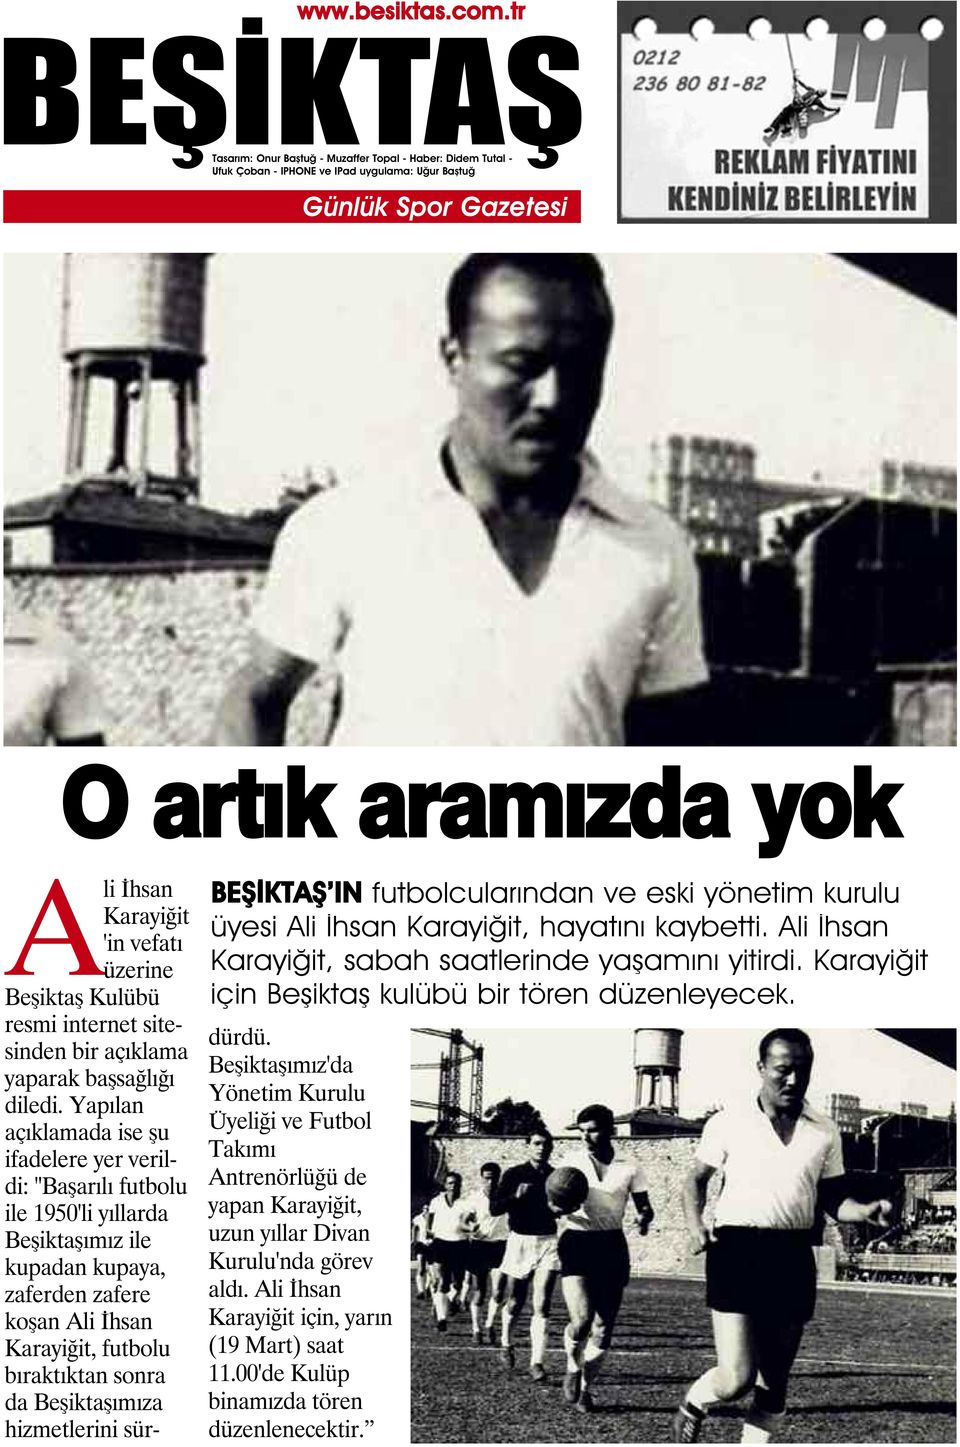 Yapılan açıklamada ise şu ifadelere yer verildi: "Başarılı futbolu ile 1950'li yıllarda Beşiktaşımız ile kupadan kupaya, zaferden zafere koşan Ali İhsan Karayiğit, futbolu bıraktıktan sonra da